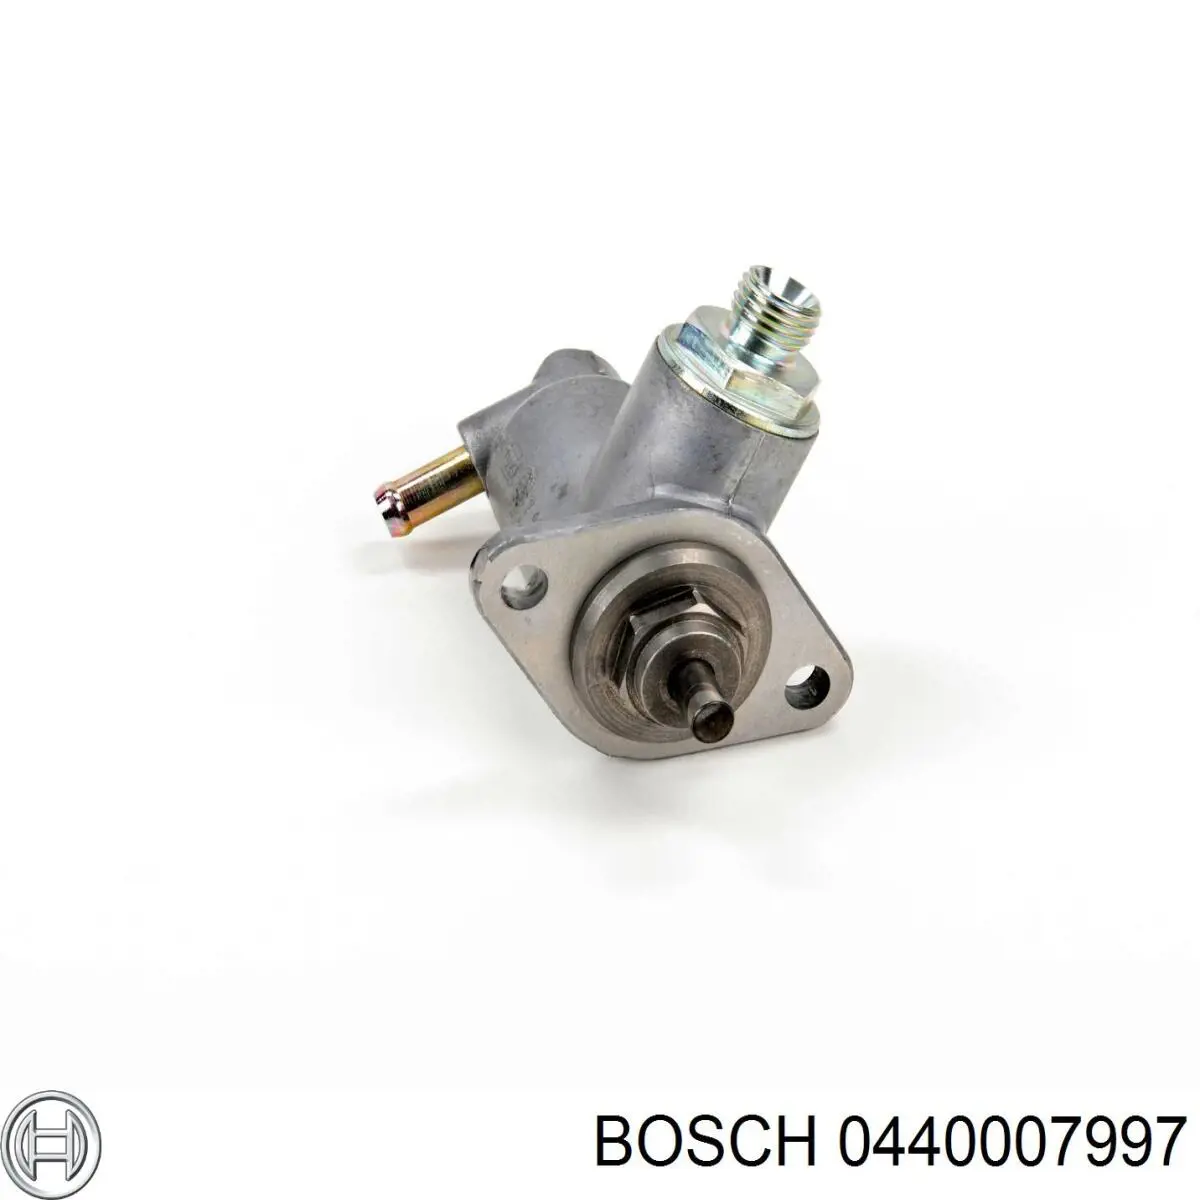 0440007997 Bosch bomba de combustible mecánica